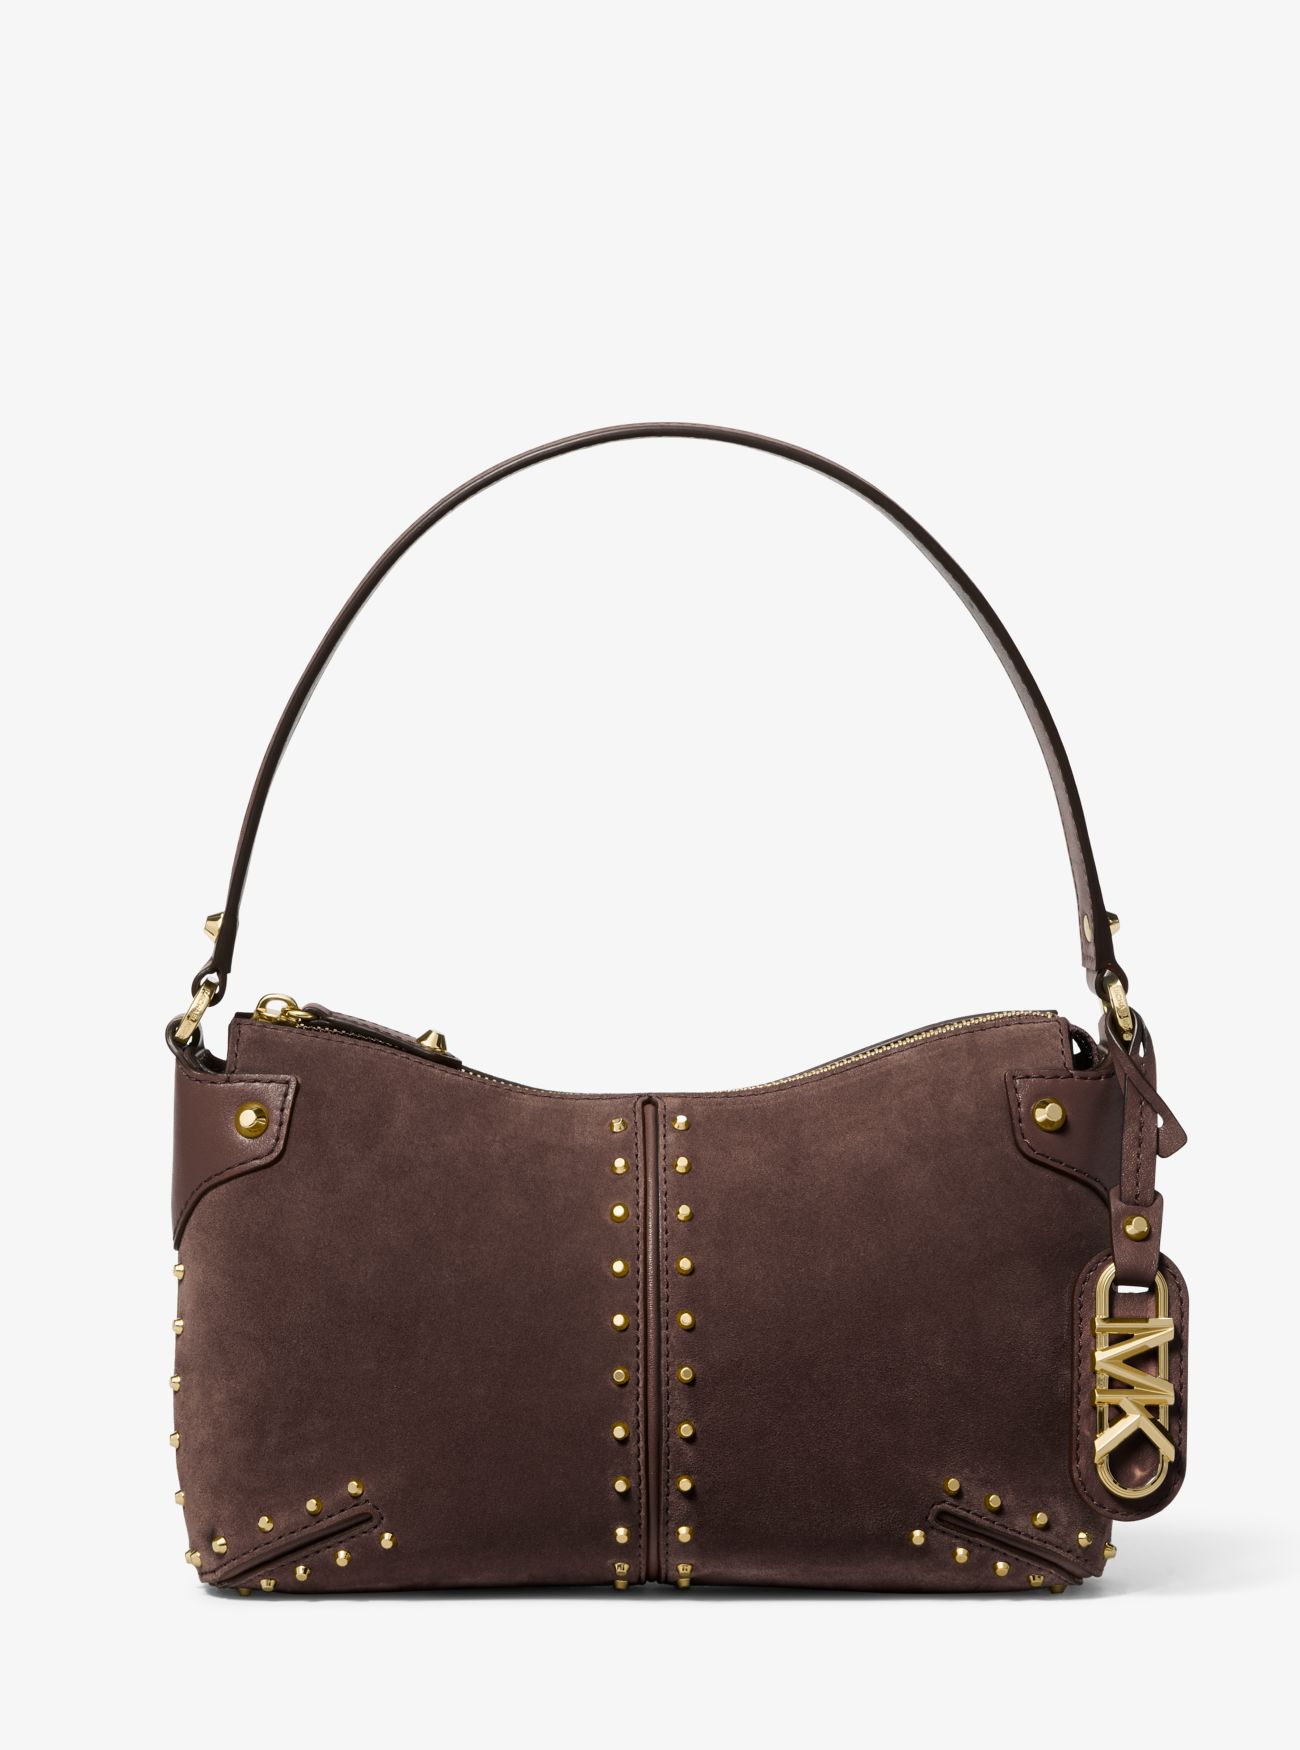 MK Astor Large Studded Suede Shoulder Bag - Chocolate - Michael Kors